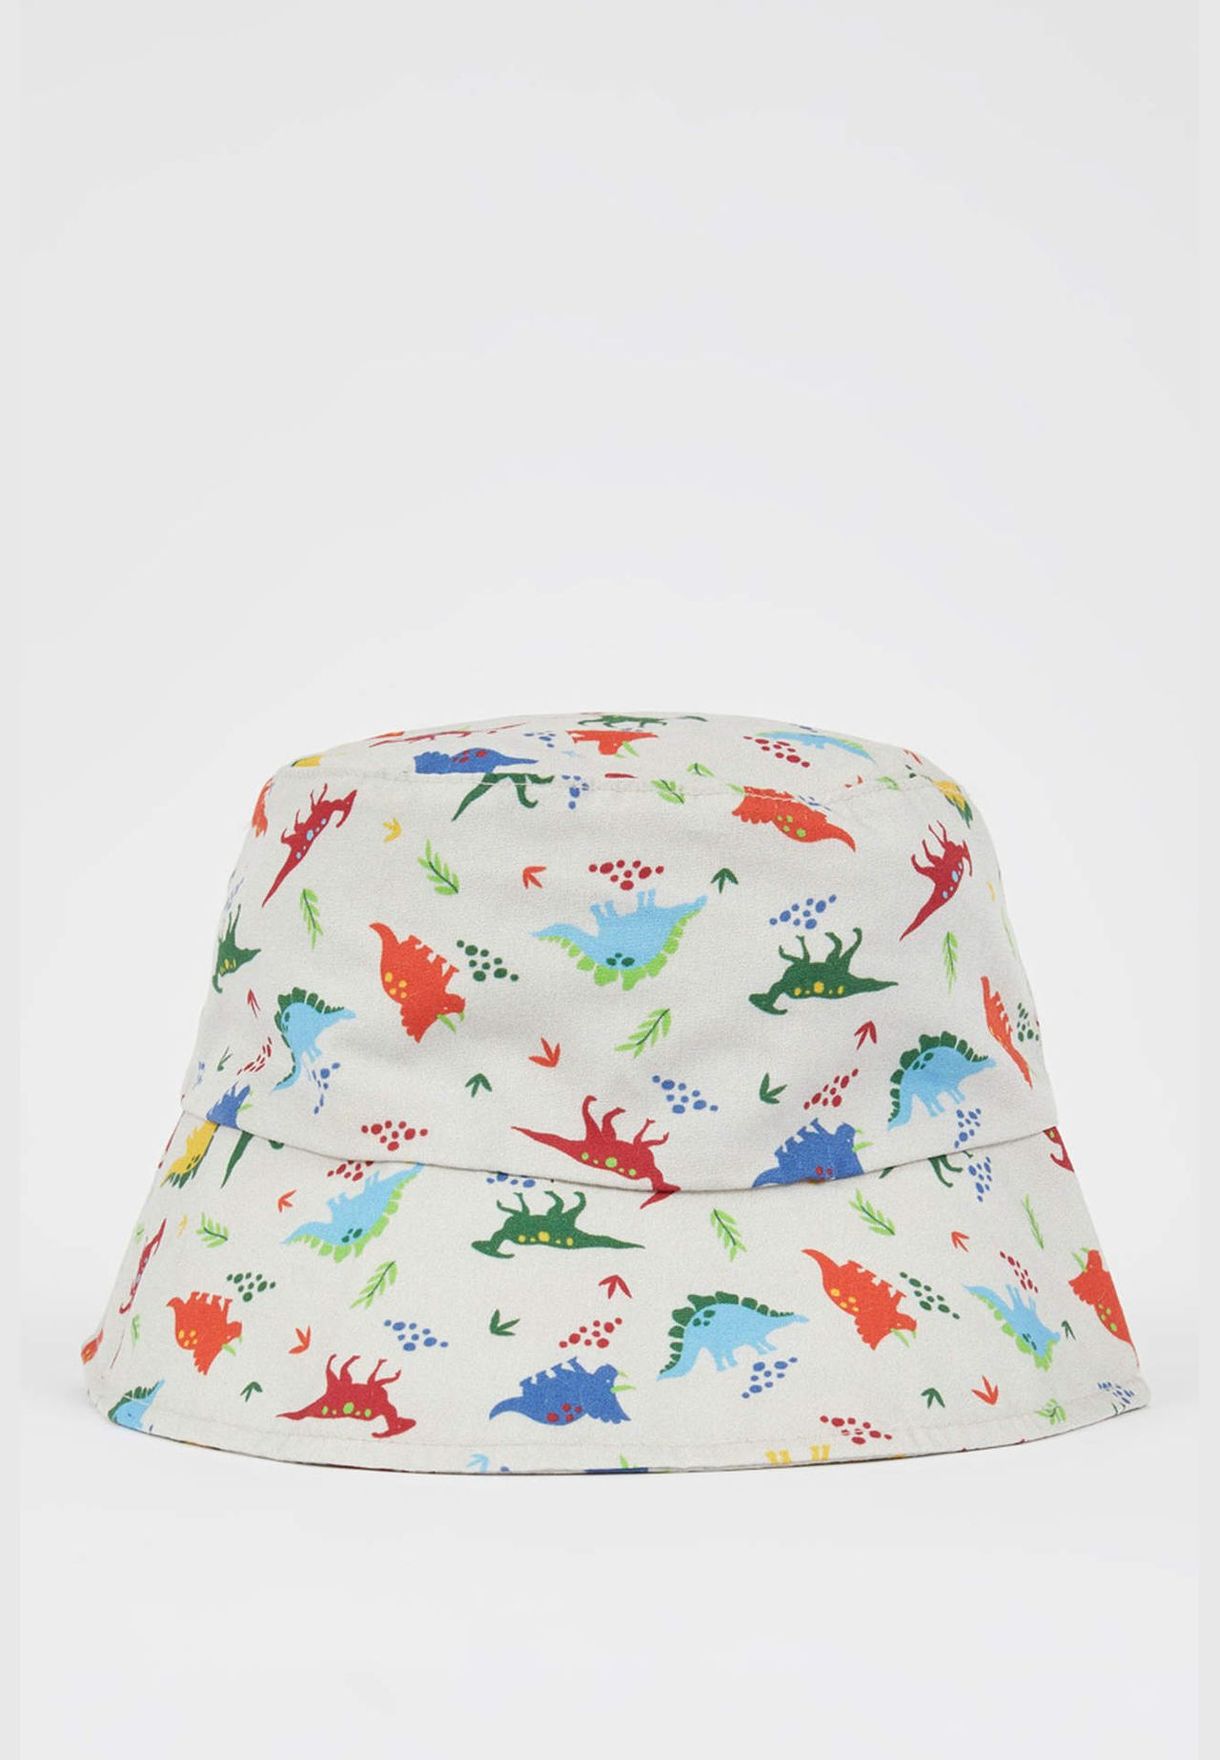 Boy Dinosaur Patterned Bucket Hat